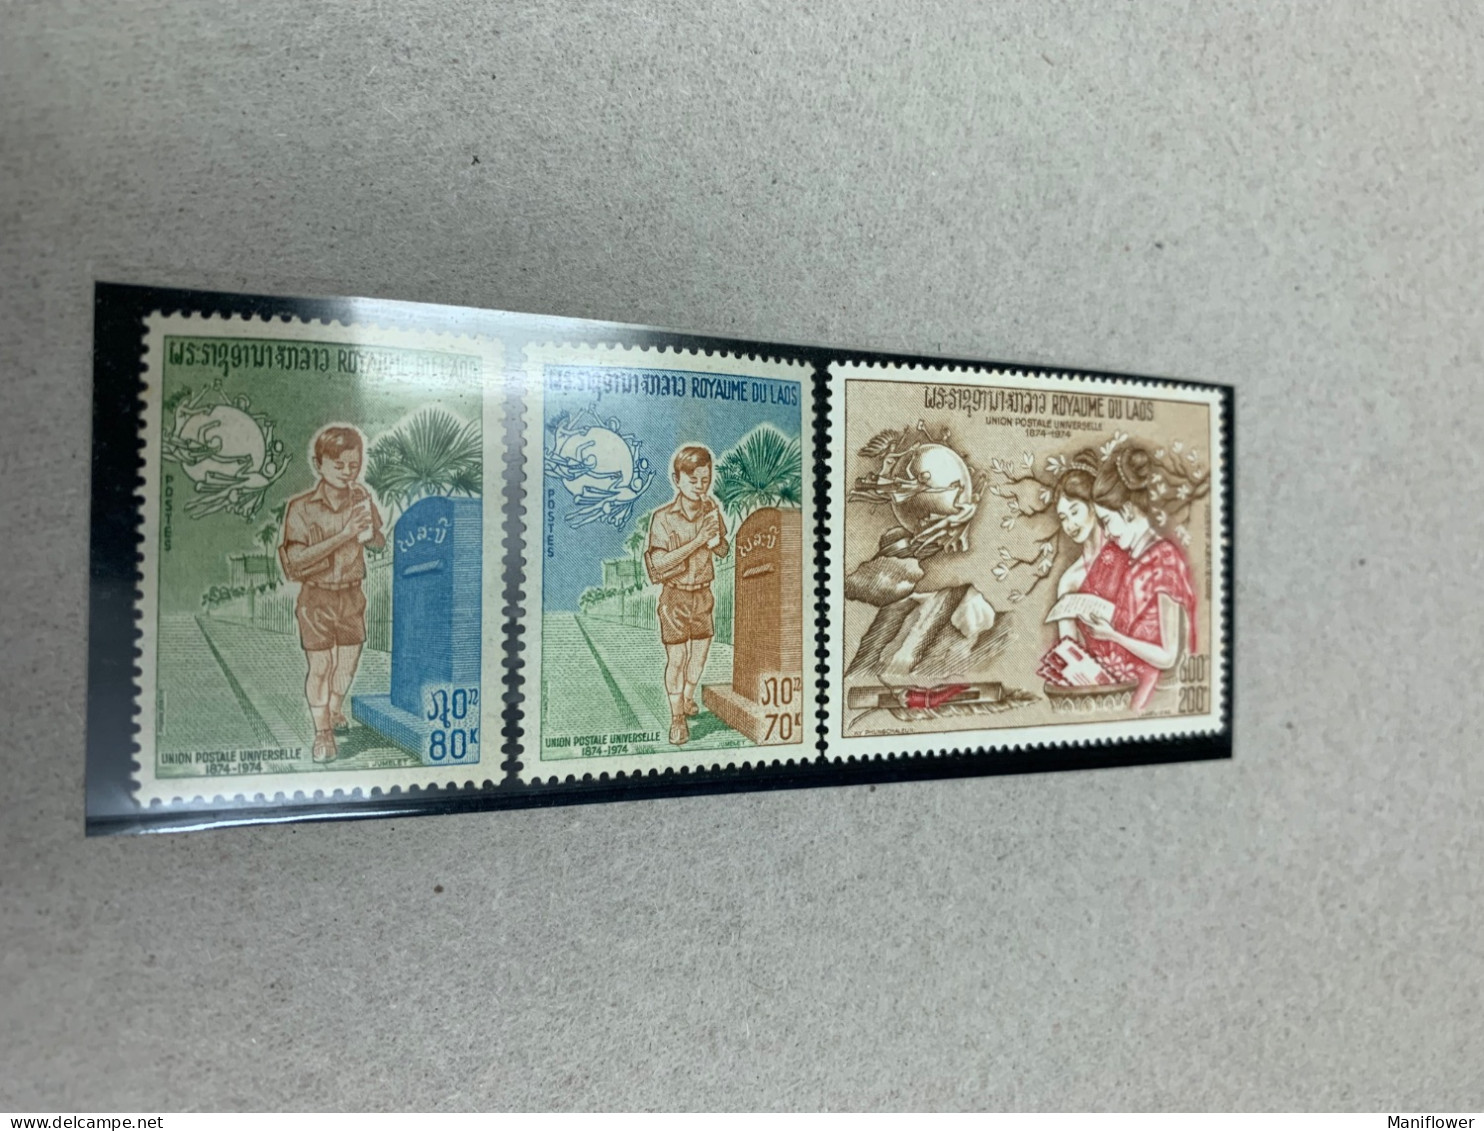 Laos Stamp UPU Post Box MNH - UPU (Union Postale Universelle)